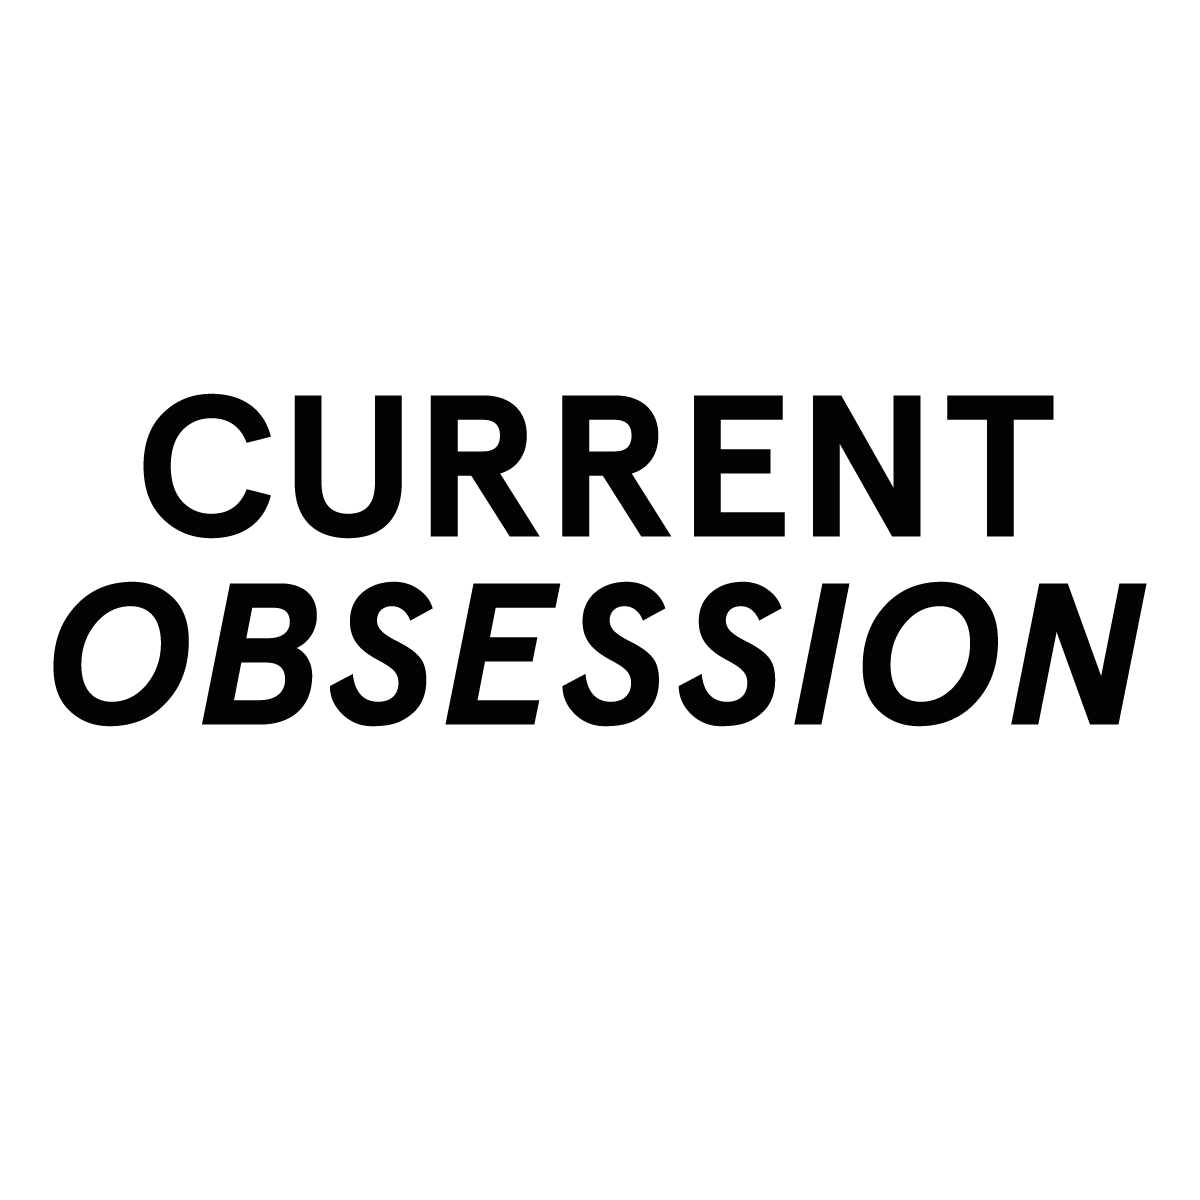 (c) Current-obsession.com